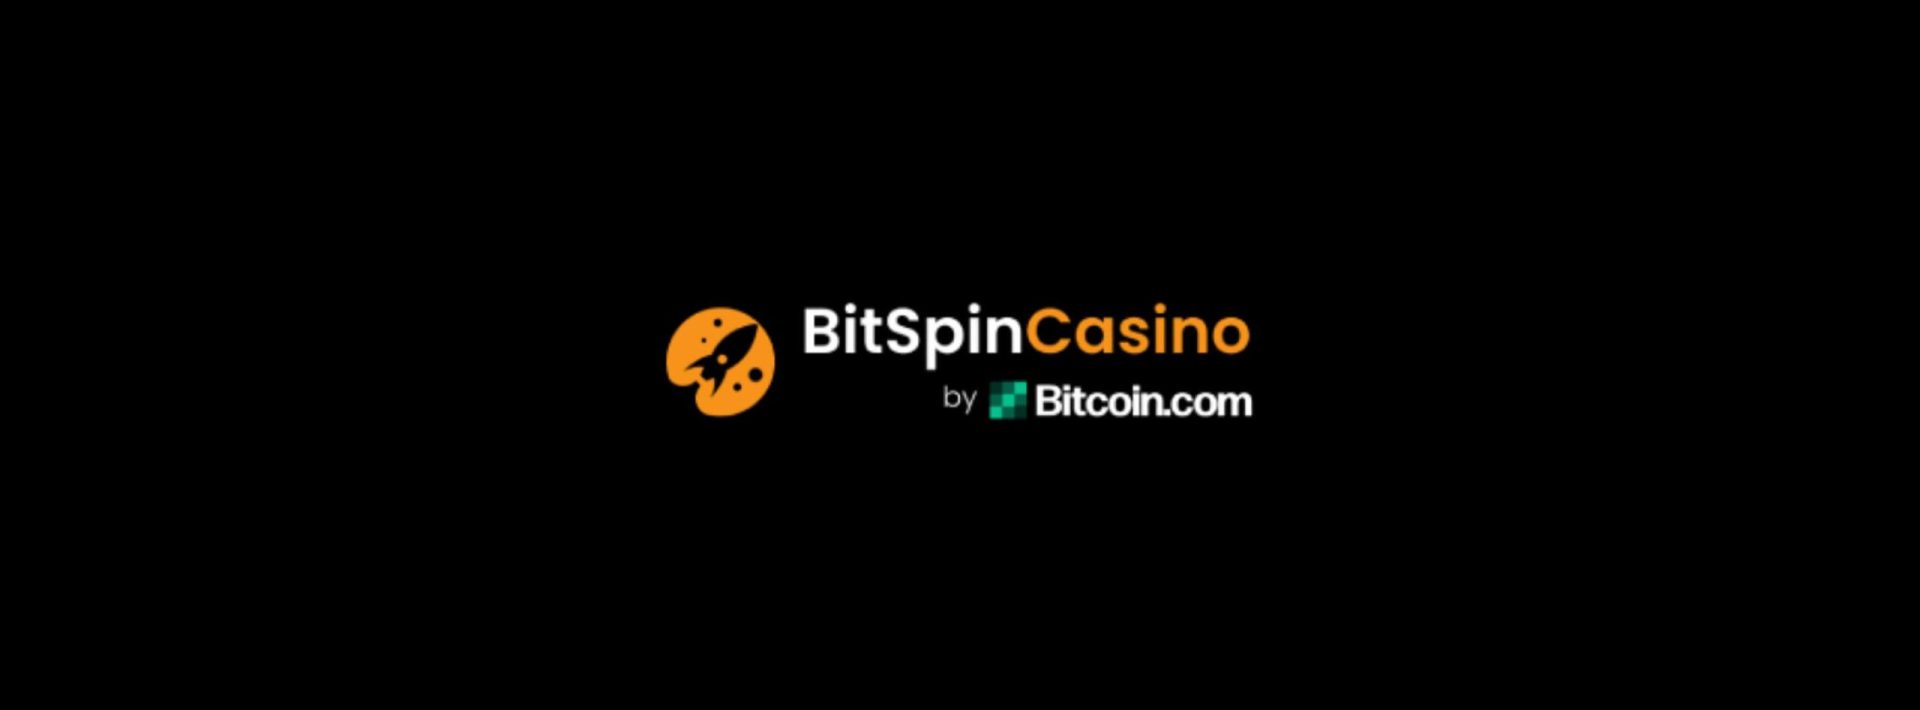 Bitcoin.com teams with crypto casino site